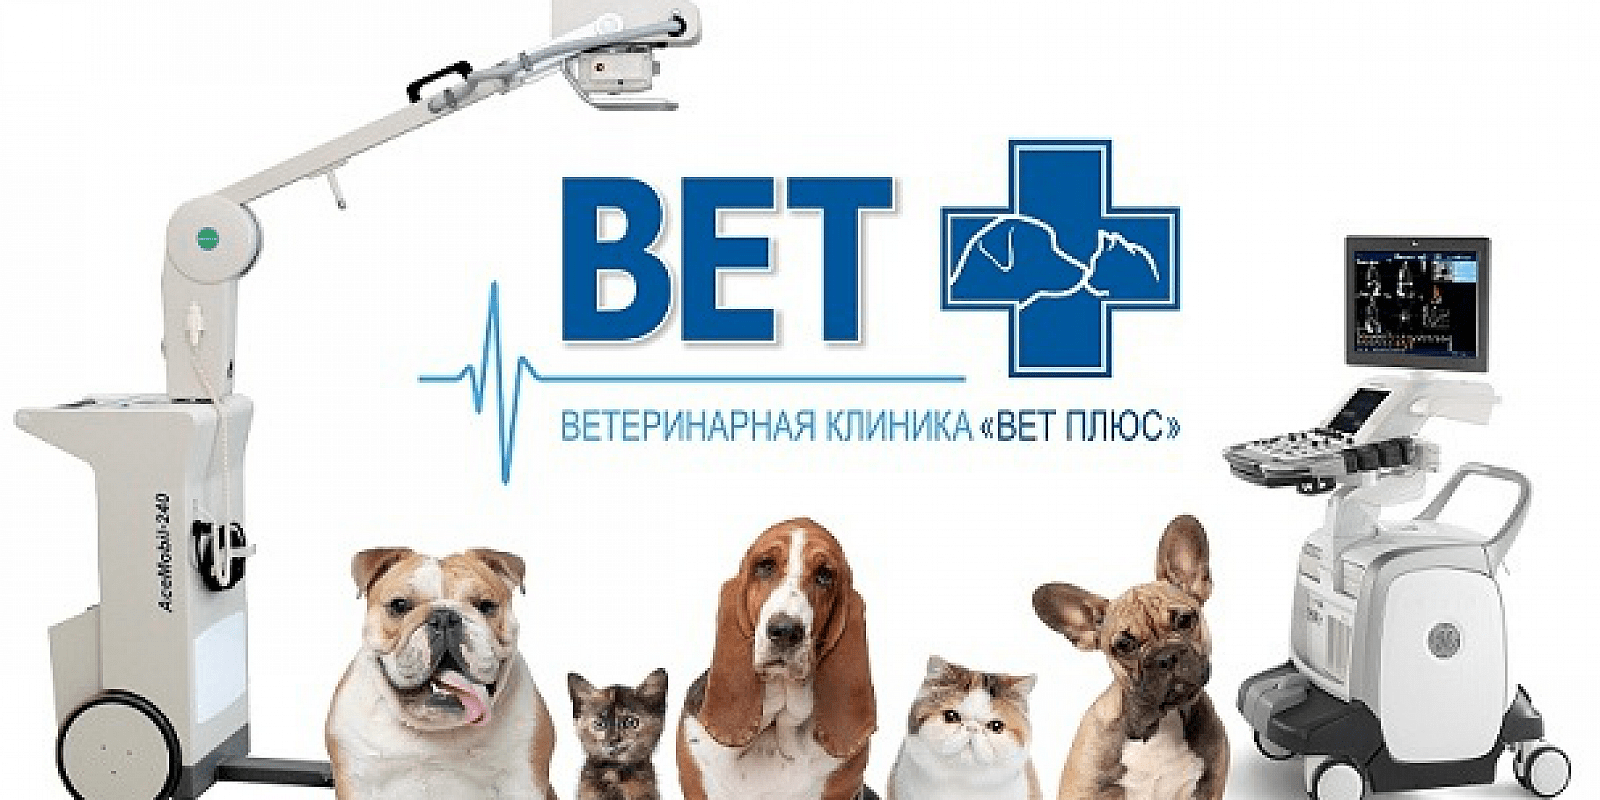 Рекламный баннер ветеринарной клиники